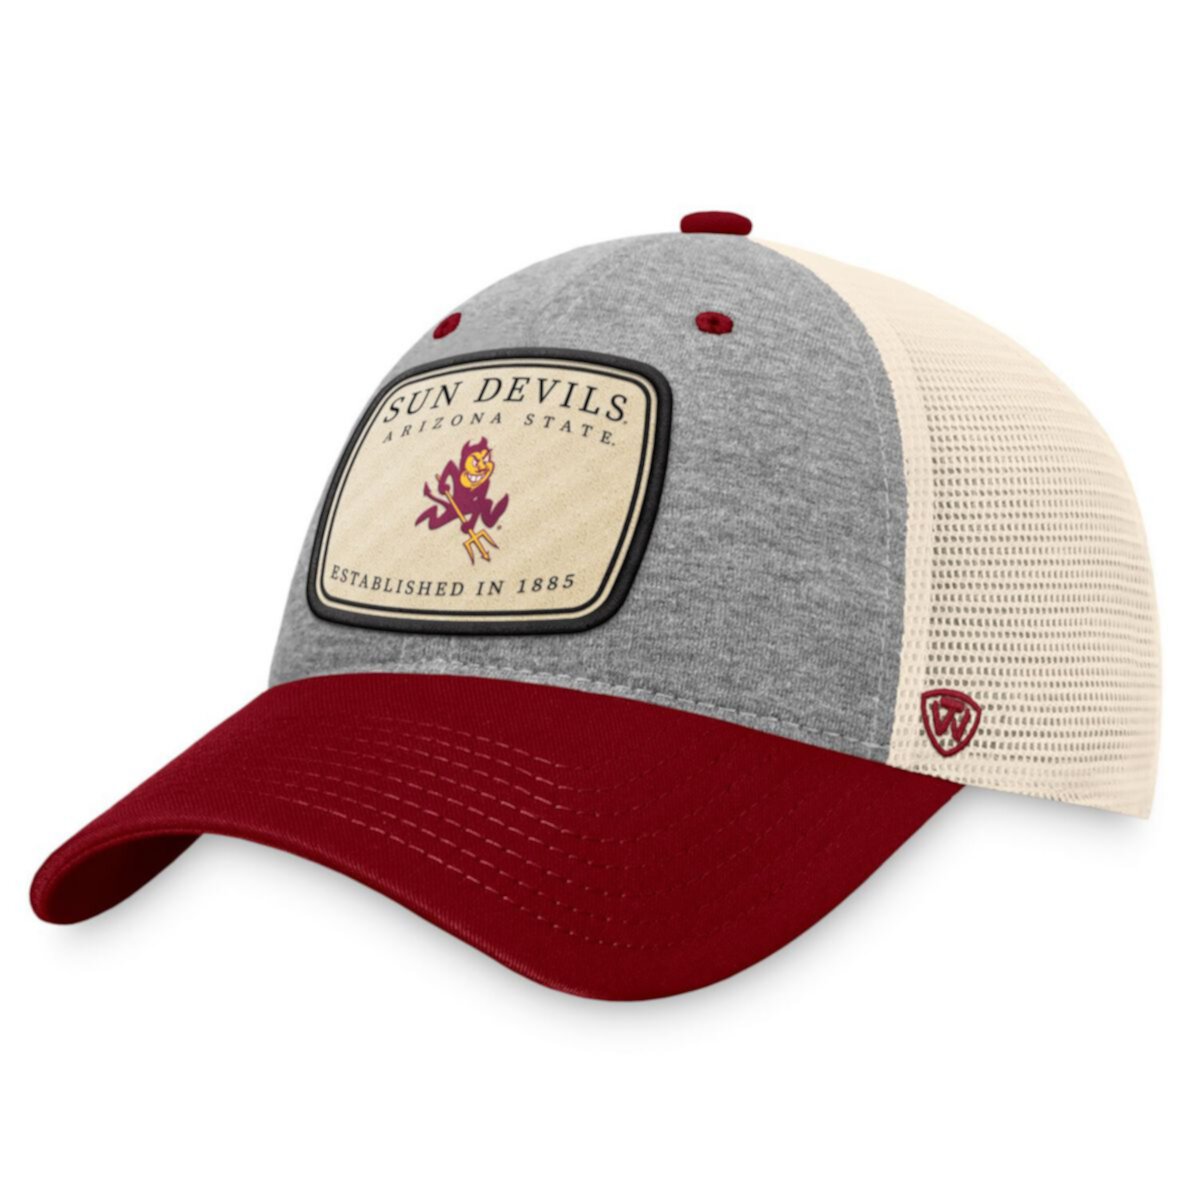 Мужская бейсболка Top of the World, меланжевая серая/натуральная Arizona State Sun Devils Chev Trucker Snapback Hat Unbranded